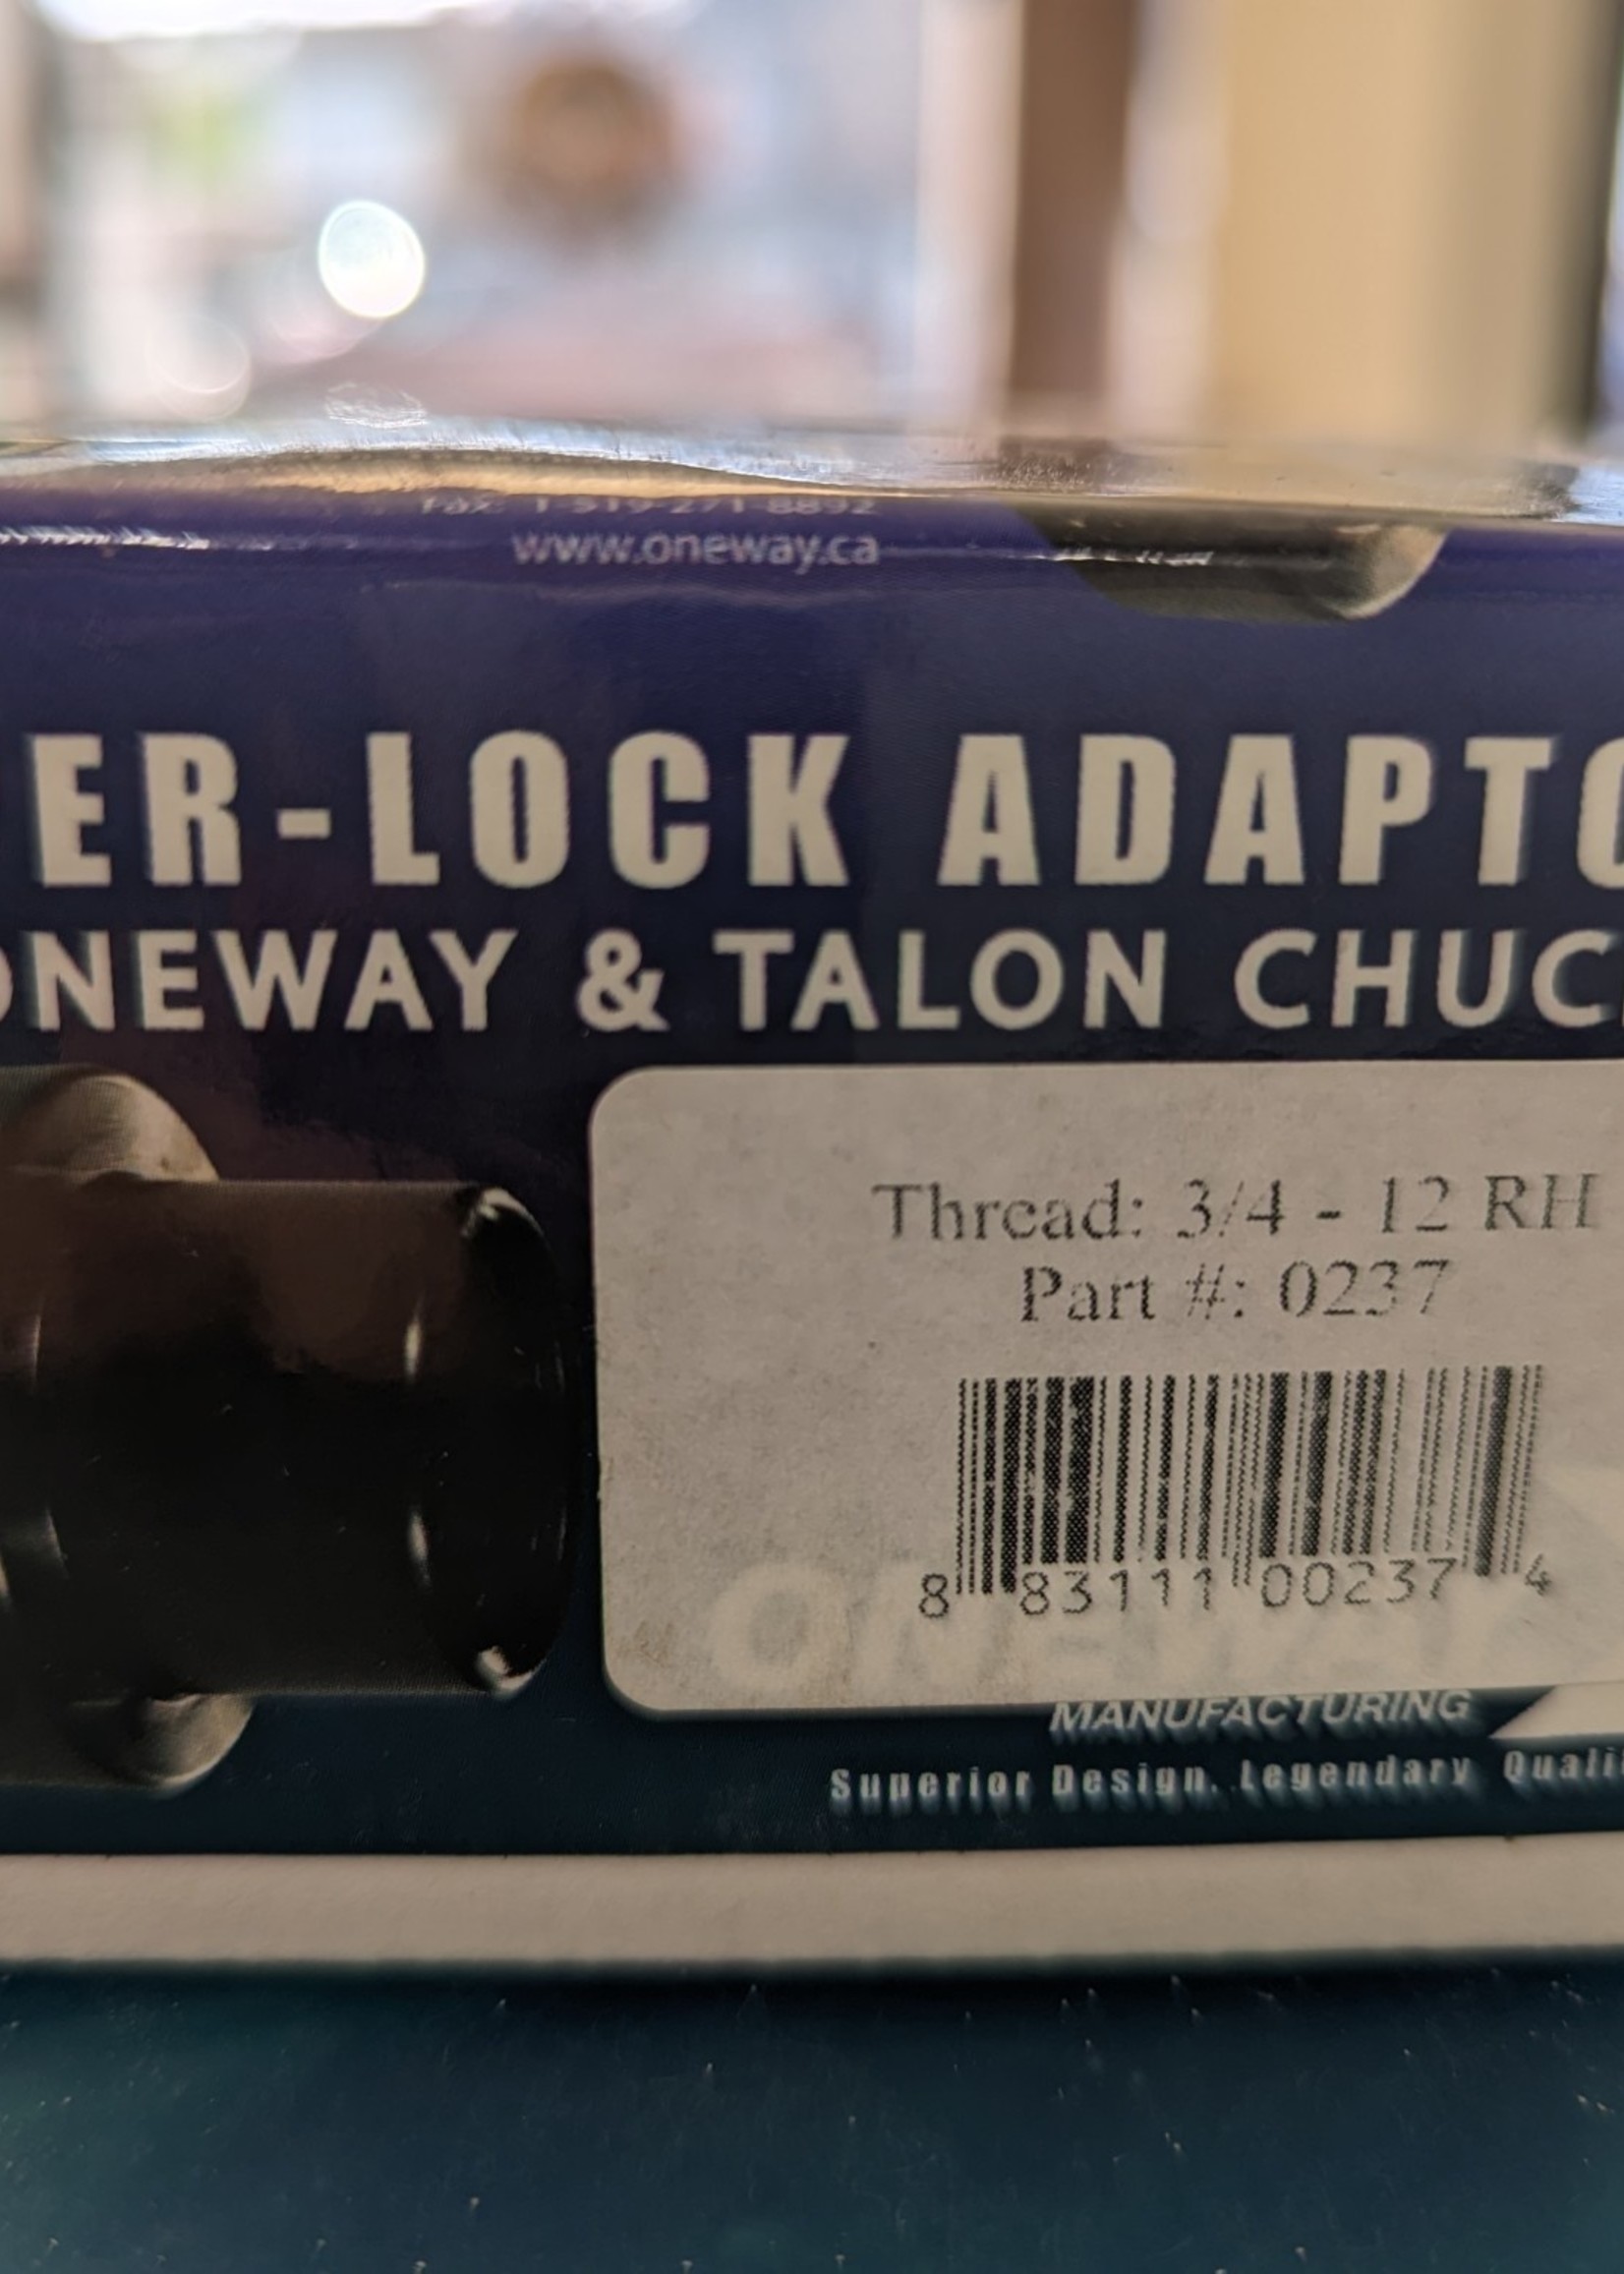 Oneway Oneway & Talon Chucks - Taper-Lock Adaptor - thread: 3/4-12 RH-p#0237